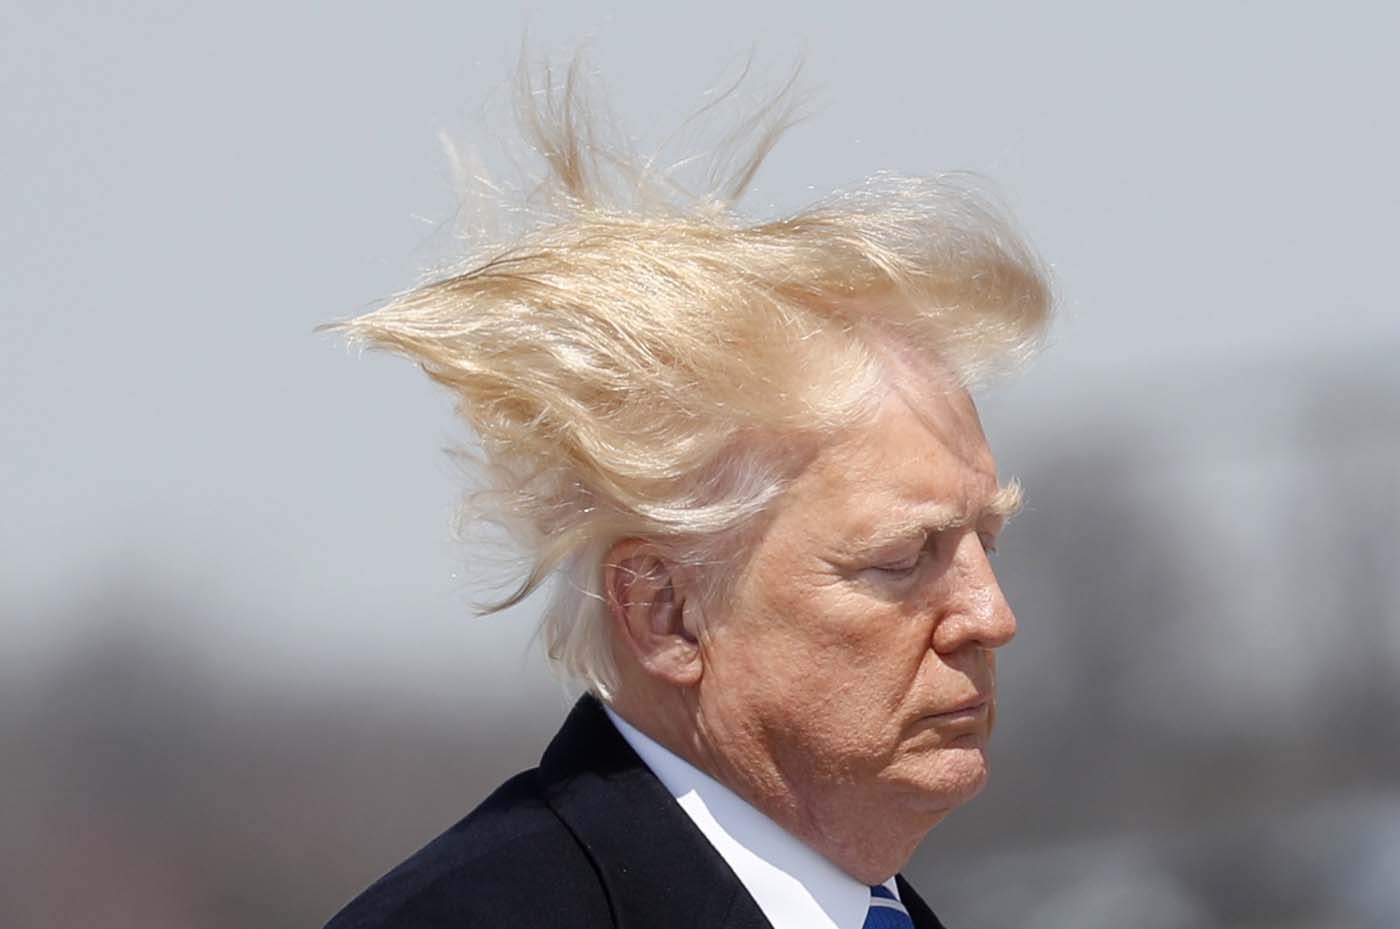 Otra vez el viento le tomó el pelo a Trump (fotos+memes)